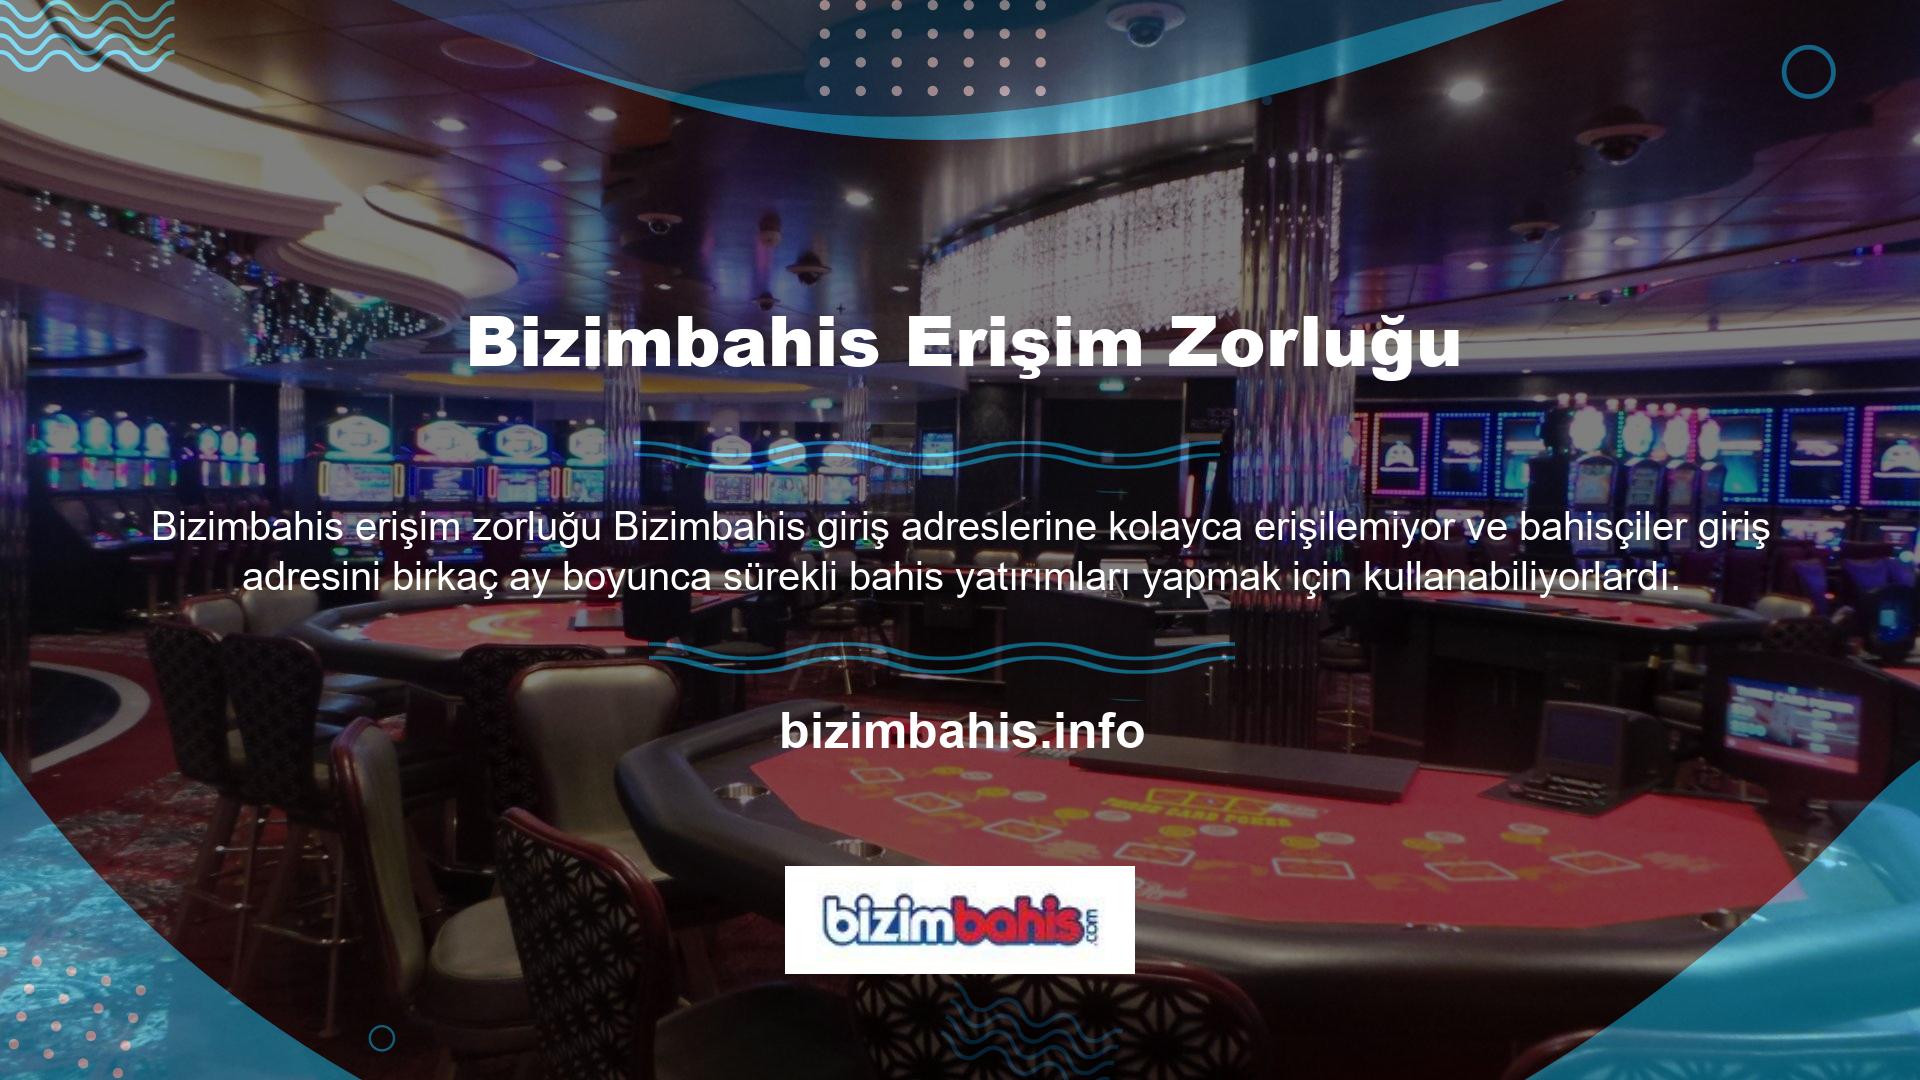 Bahis tutkunlarının Bizimbahis ve sanal casinoya olan ilgisi nedeniyle son yıllarda erişim adresleri daha popüler hale geldi